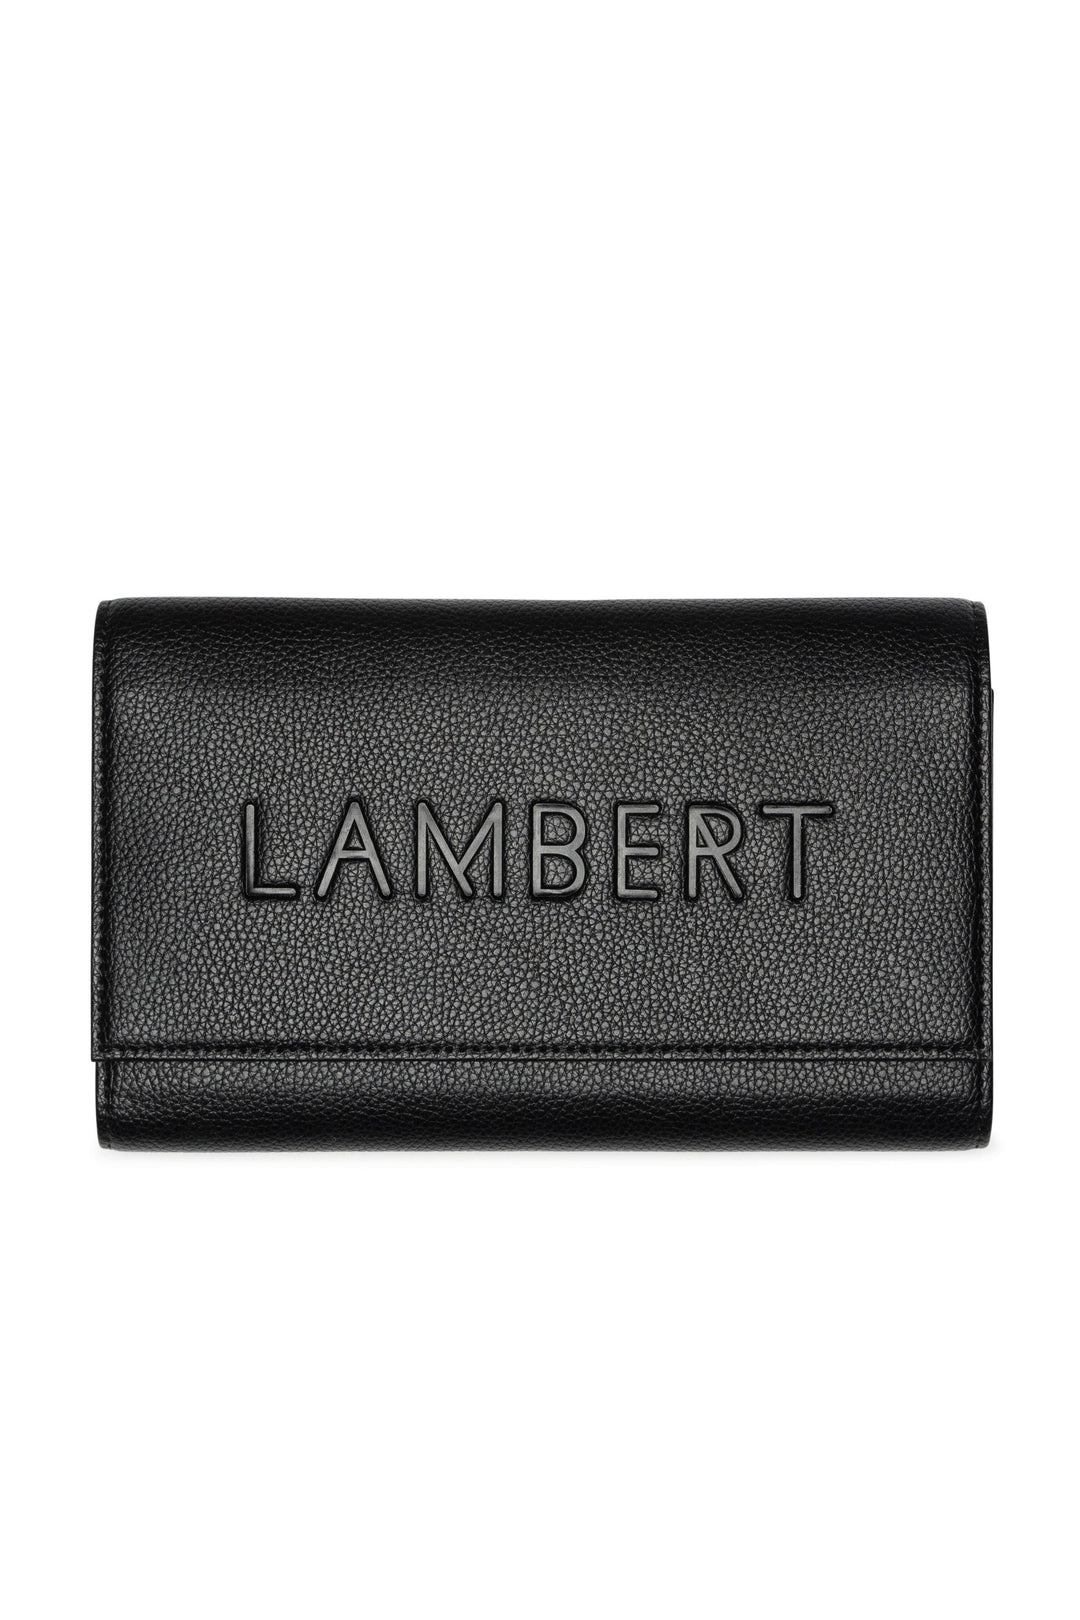 Étui à passeport en cuir vegan - Lambert - ATLAS - Noir Lambert 